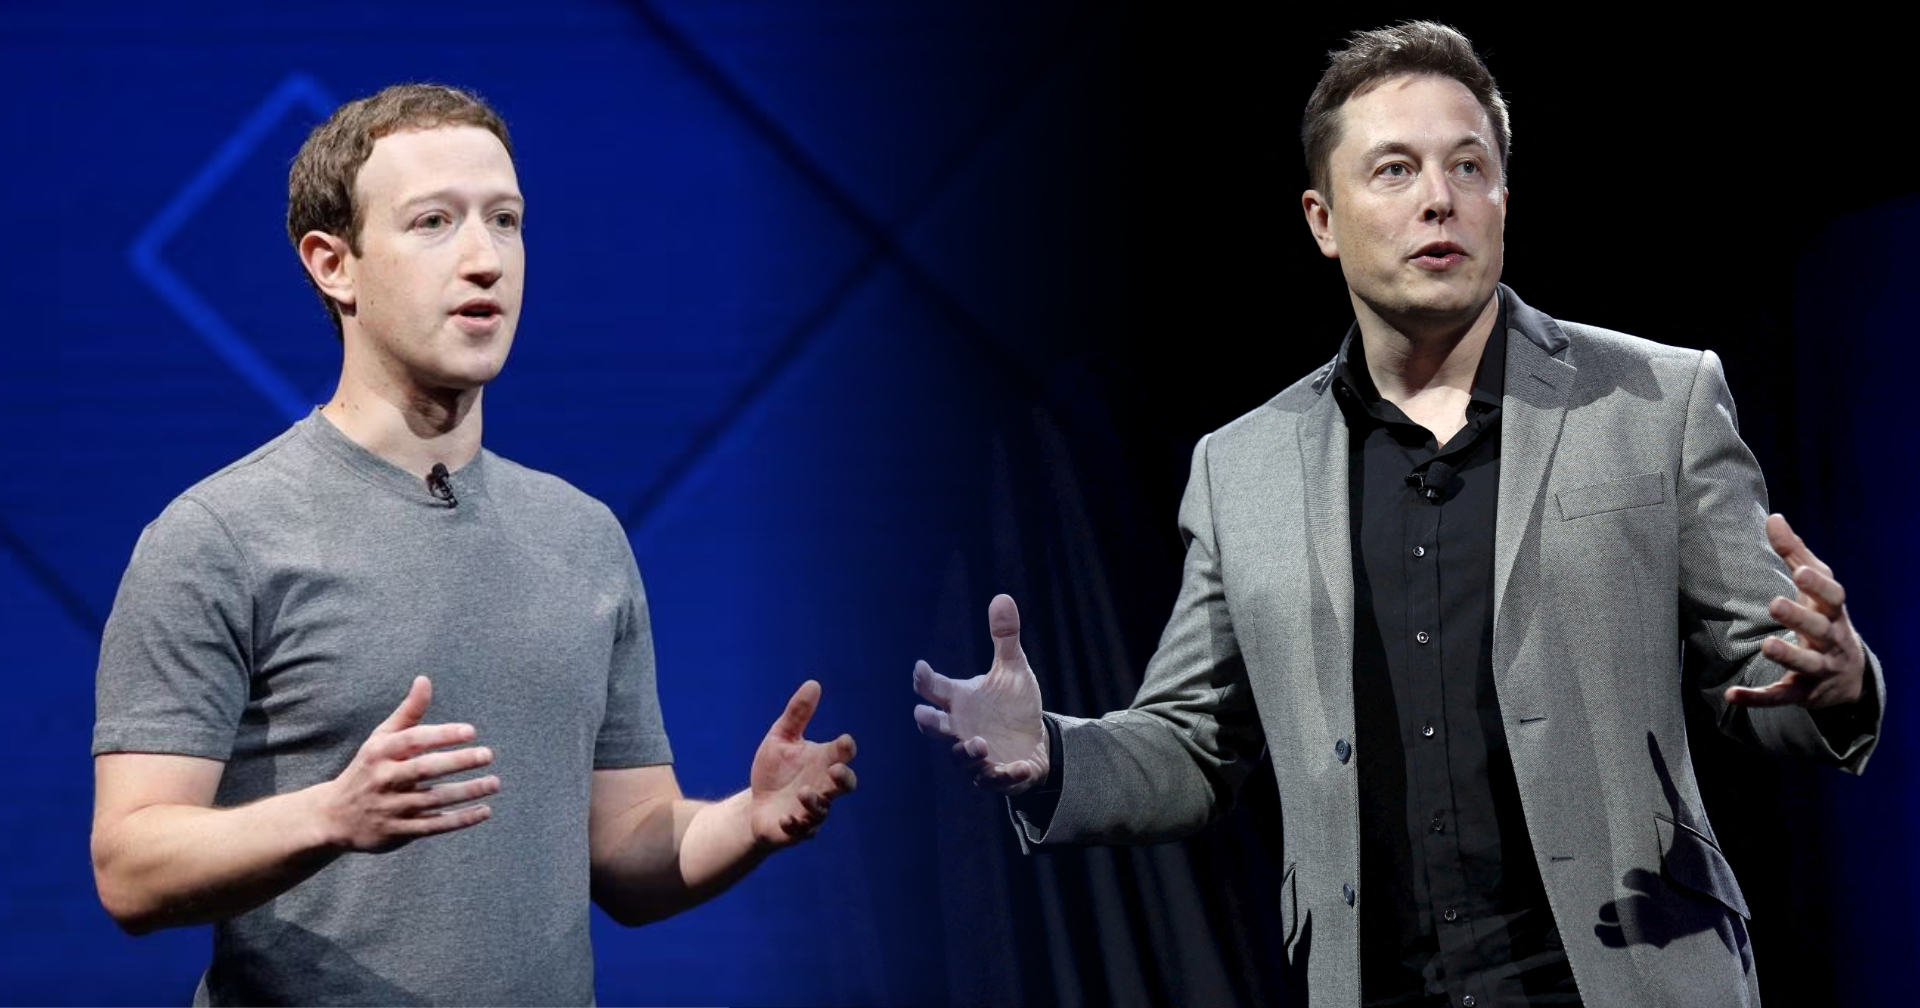 Mark Zuckerberg ชื่นชม Elon Musk ที่กล้าไล่พนักงานออกจำนวนมาก